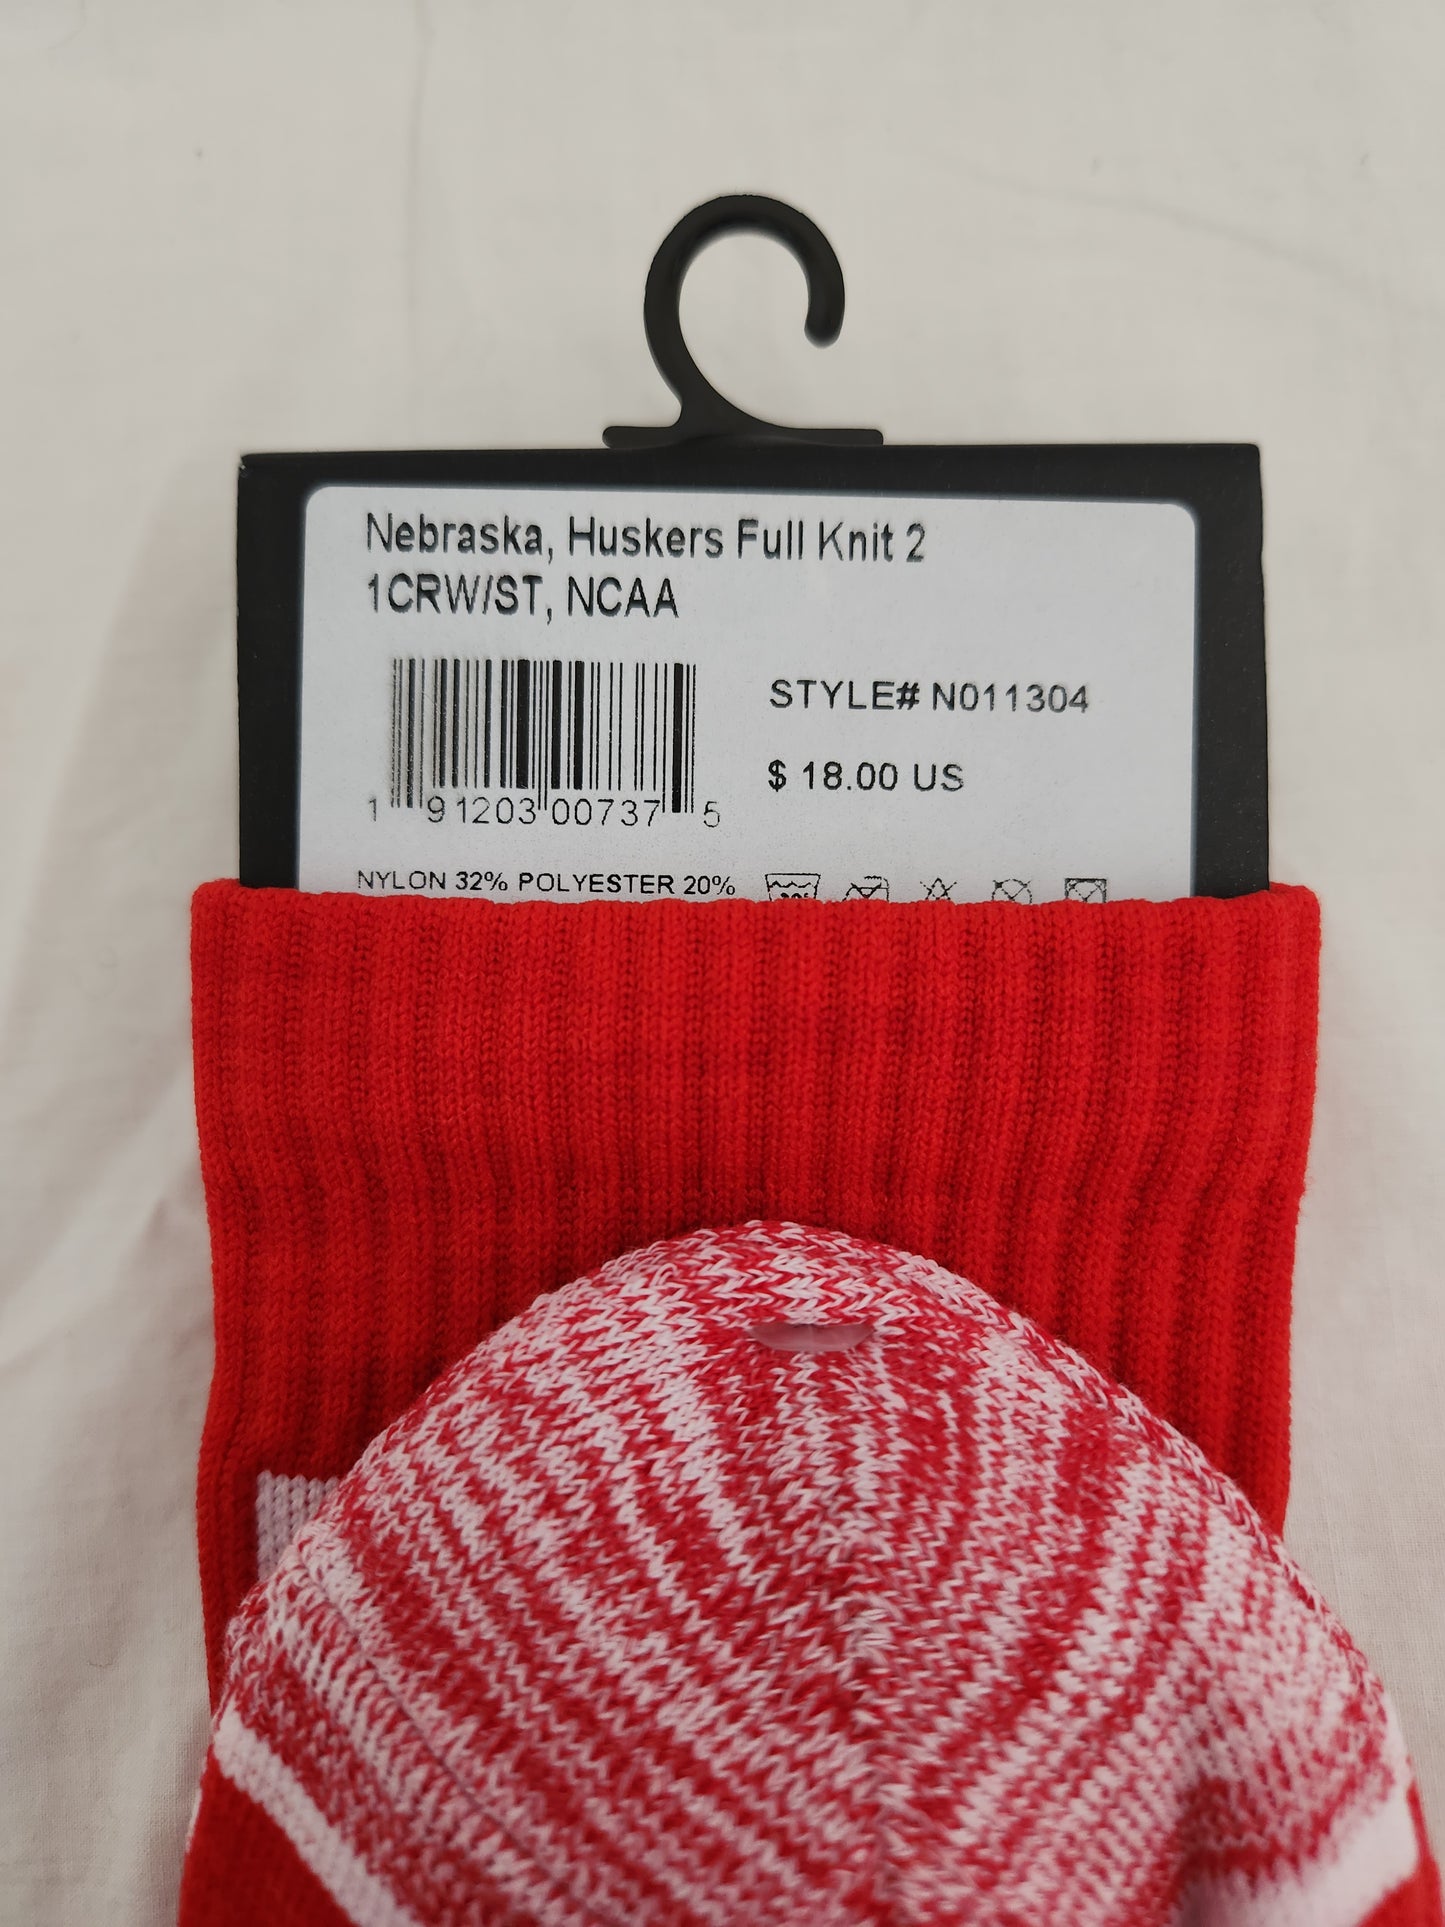 NWT - Strideline Men's Red Nebraska Huskers Socks - Size: M/L